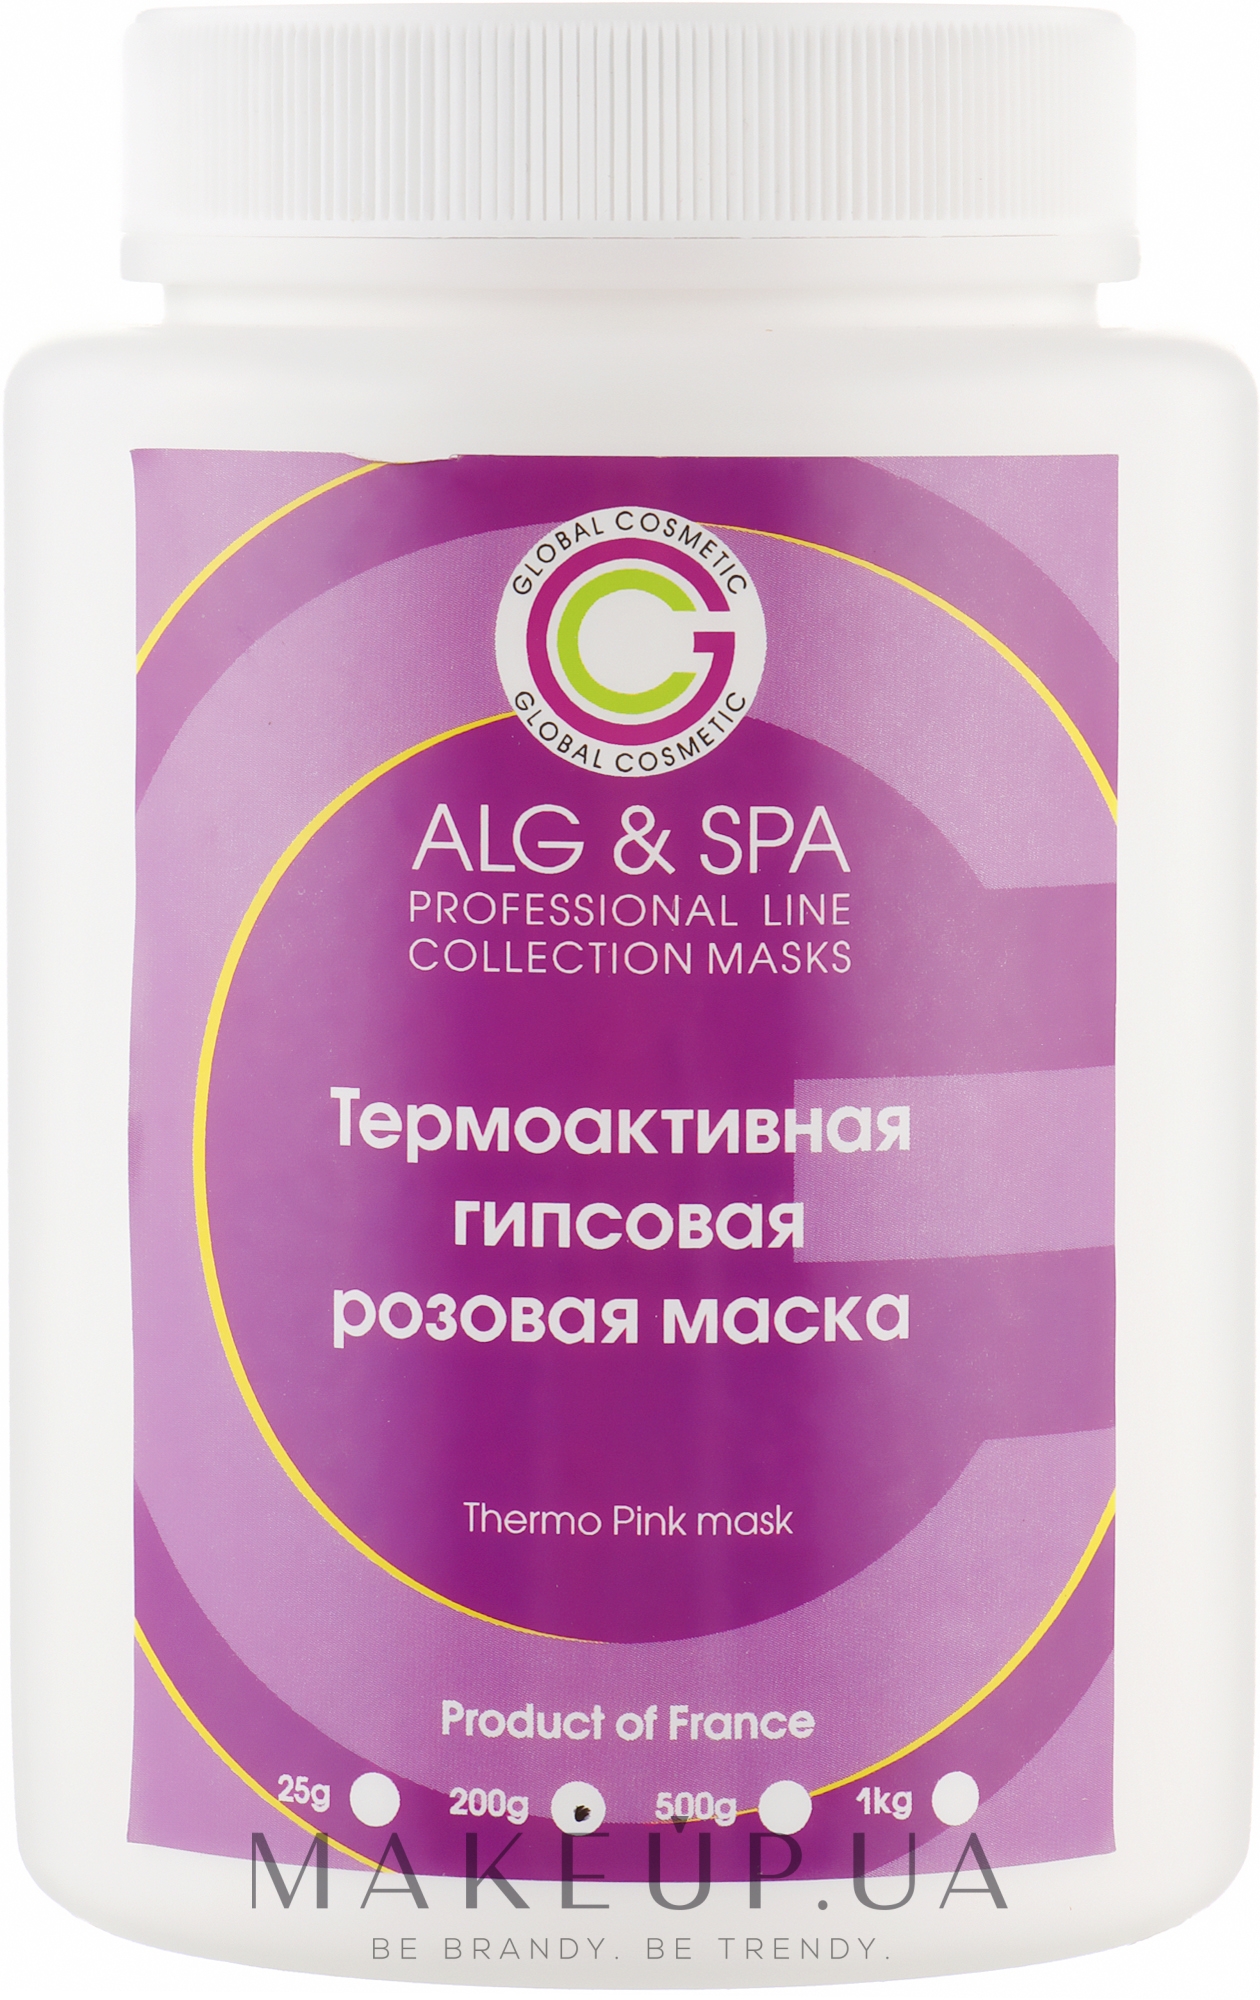 Термомоделирующая розовая маска (гипсовая) - ALG & SPA Professional Line Collection Masks Thermo Pink Mask — фото 200g